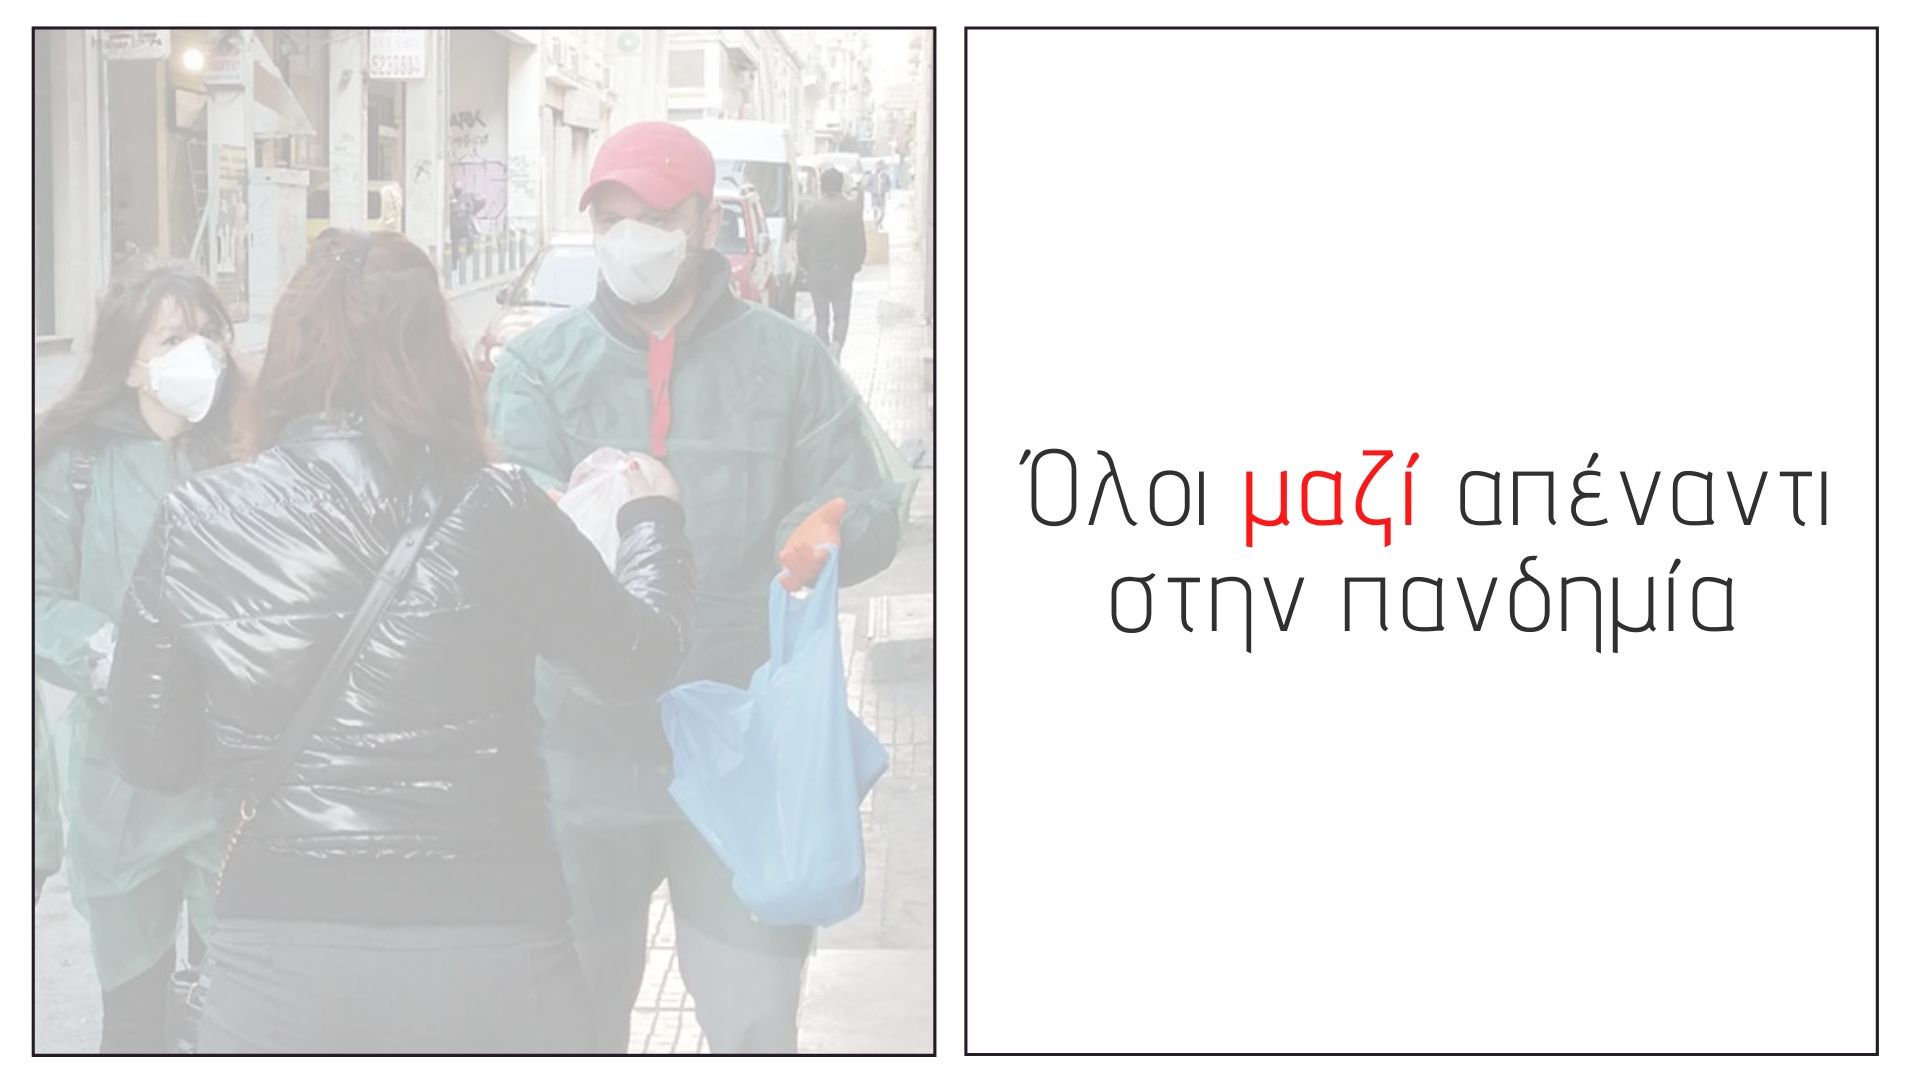 Εικόνα για το άρθρο “Συνεργασία της Θετικής Φωνής με τον Δήμο Αθηναίων, τον Προμηθέα και τον ΟΚΑΝΑ για την υποστήριξη των ευάλωτων ομάδων”